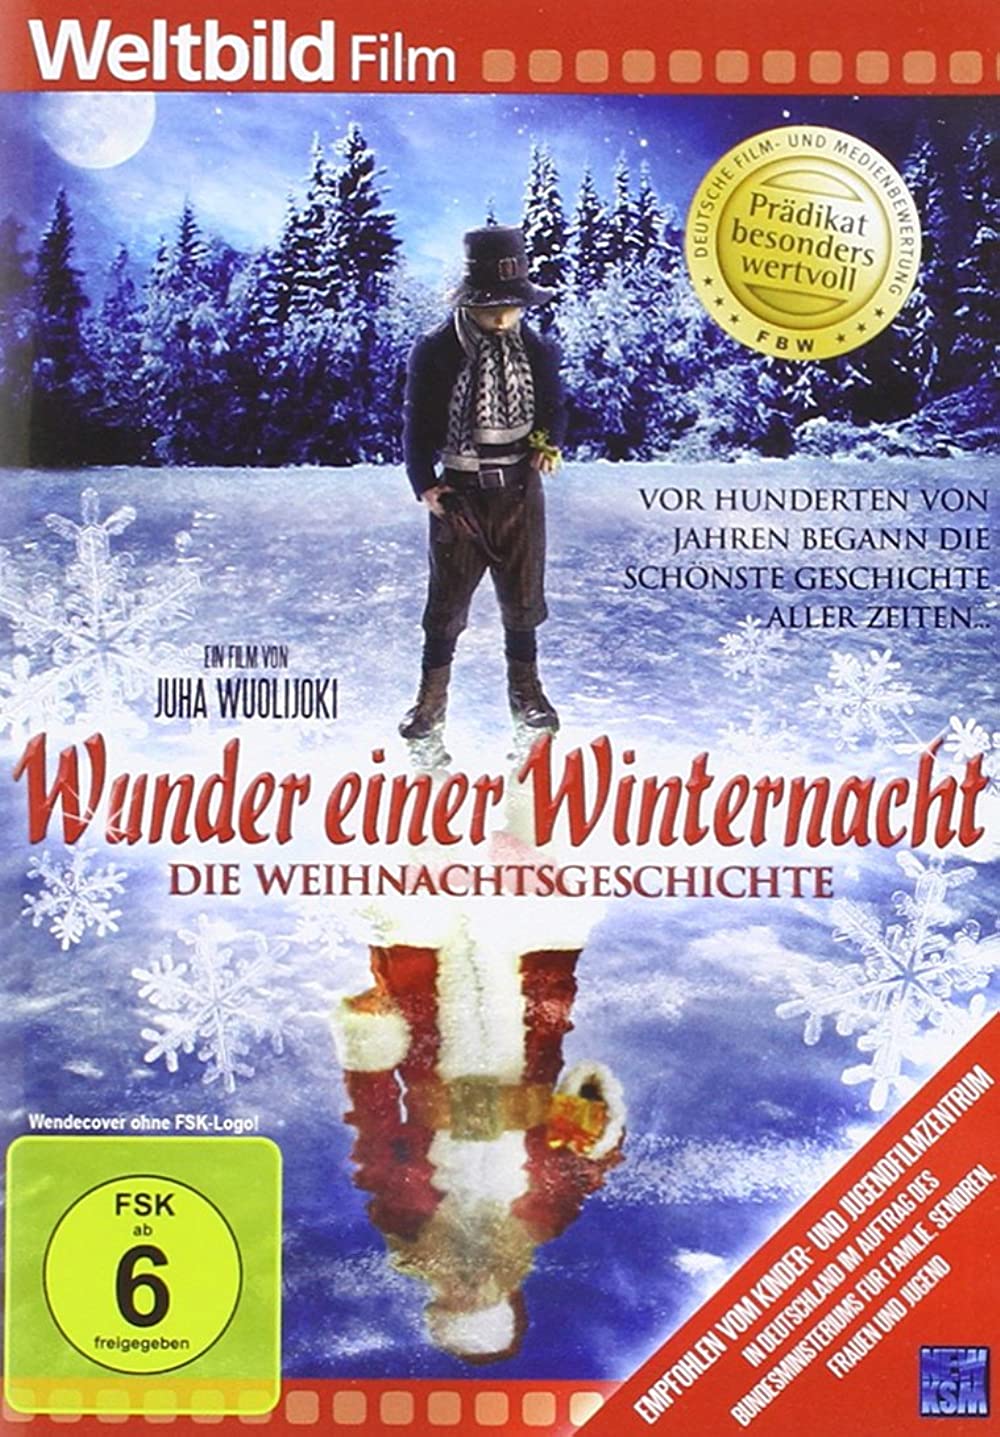 Filmbeschreibung zu Wunder einer Winternacht